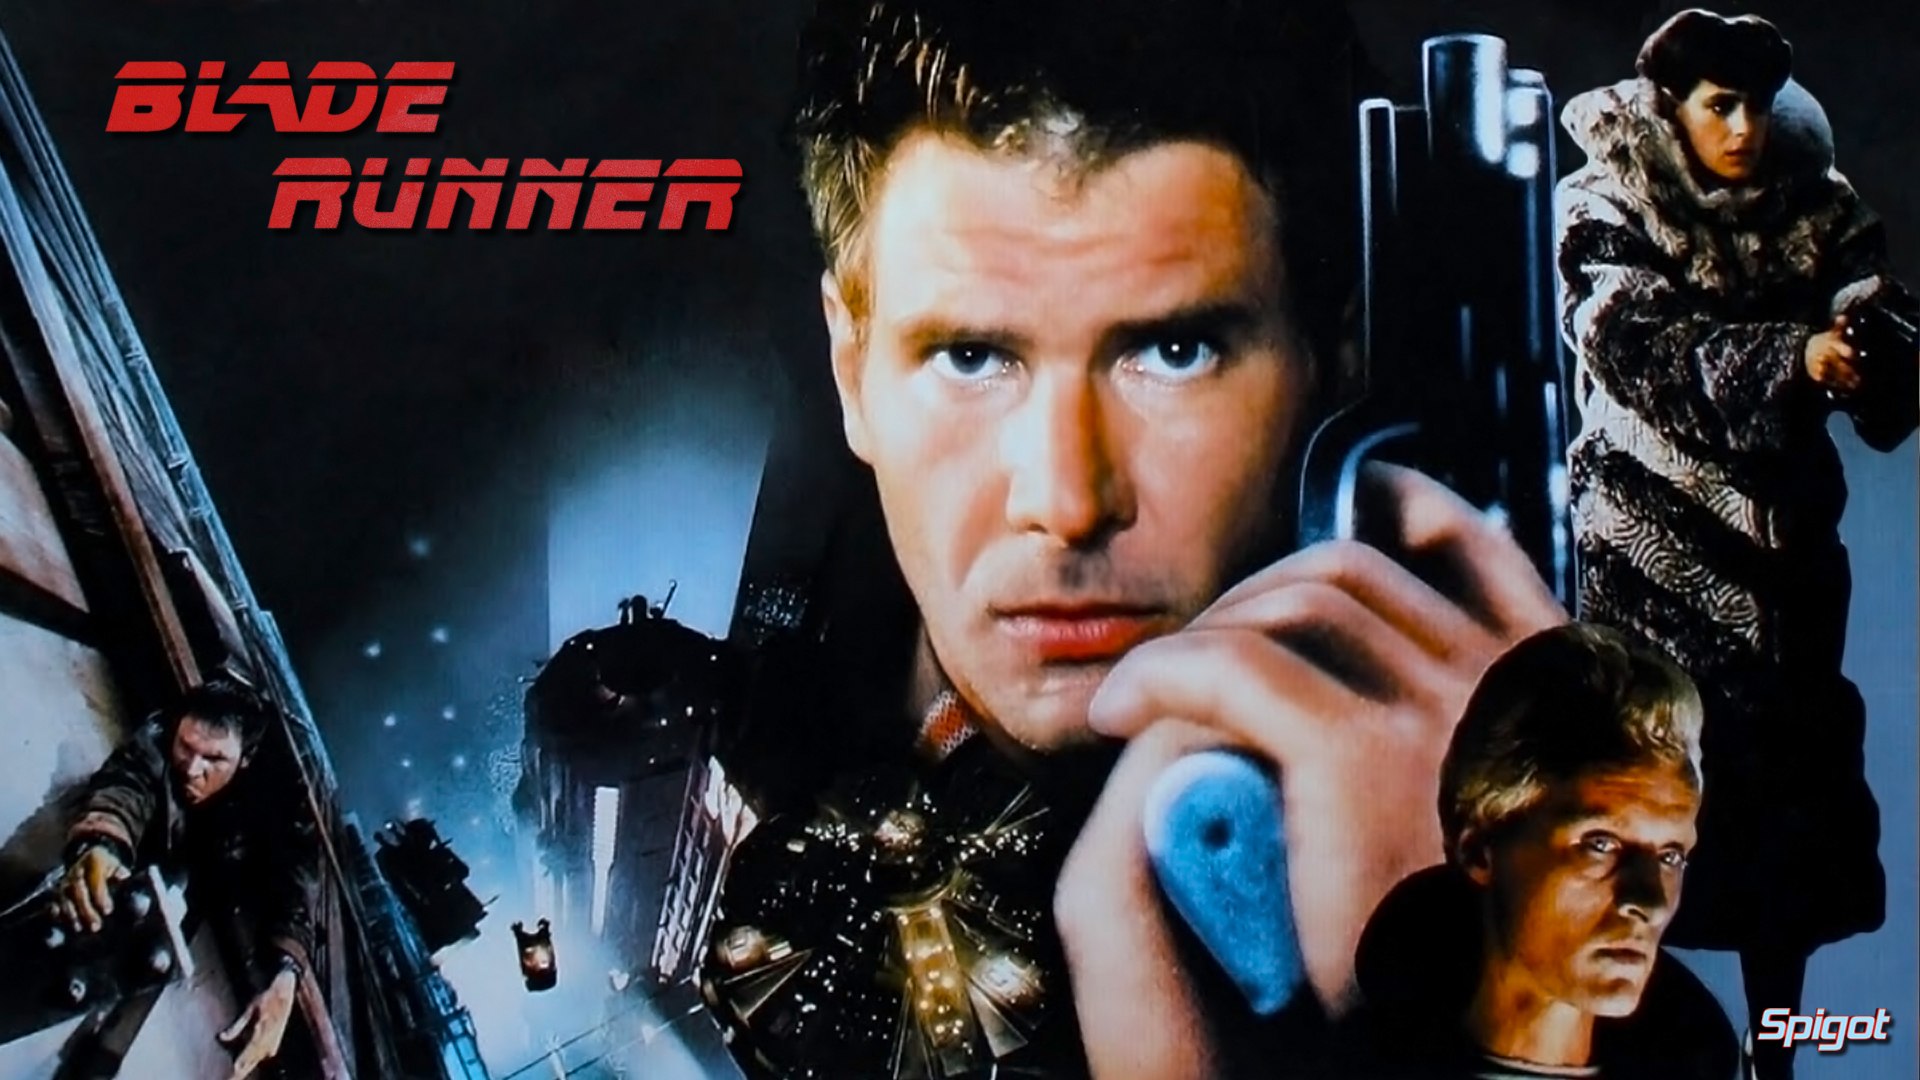 Blade Runner movie (1982) - UmGeeks